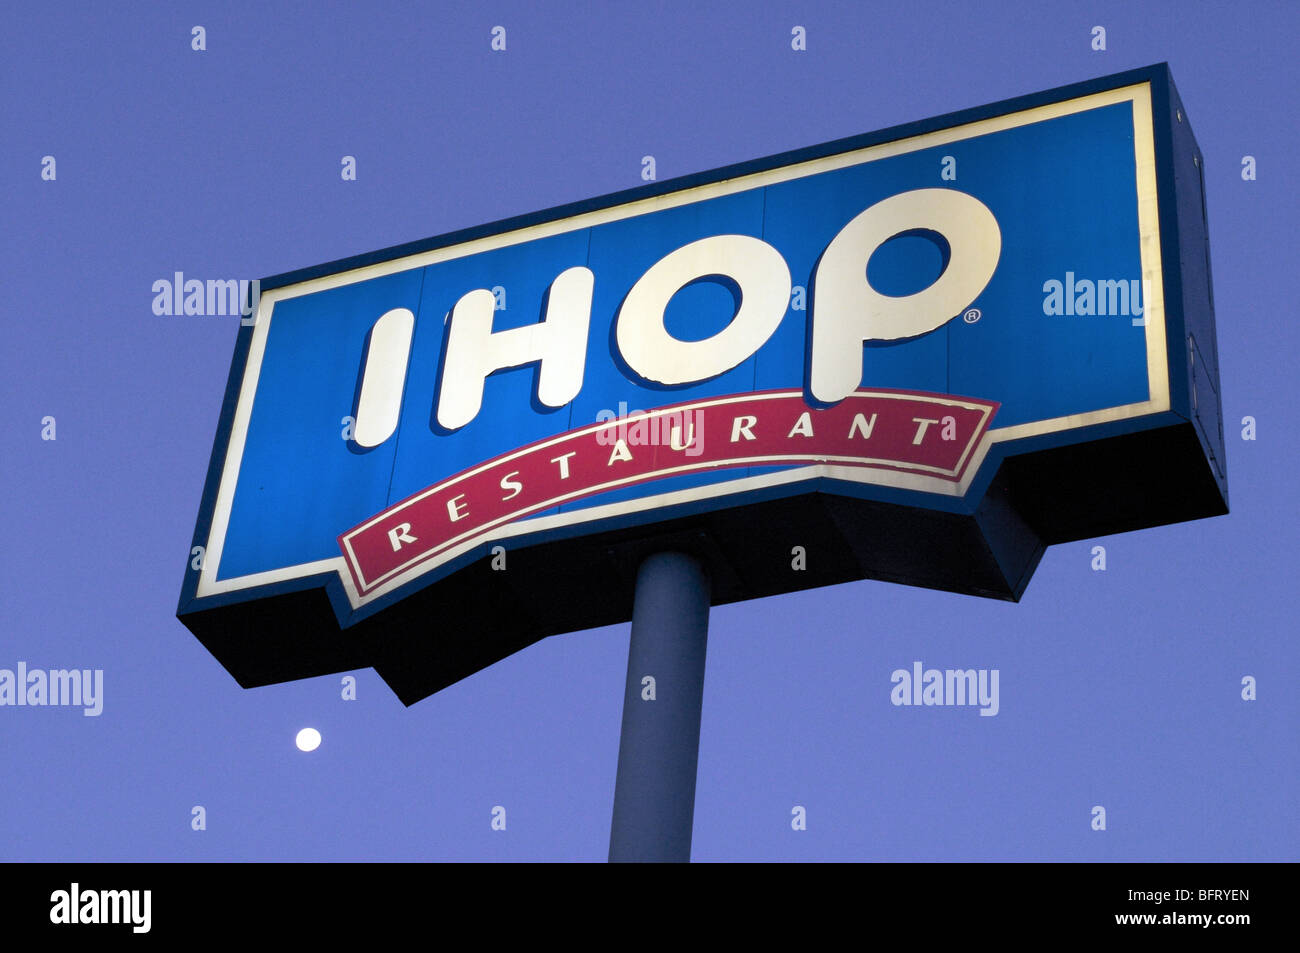 Ihop Restaurant Neon Sign Stock Photo - Download Image Now - IHOP,  Restaurant, Building Exterior - iStock